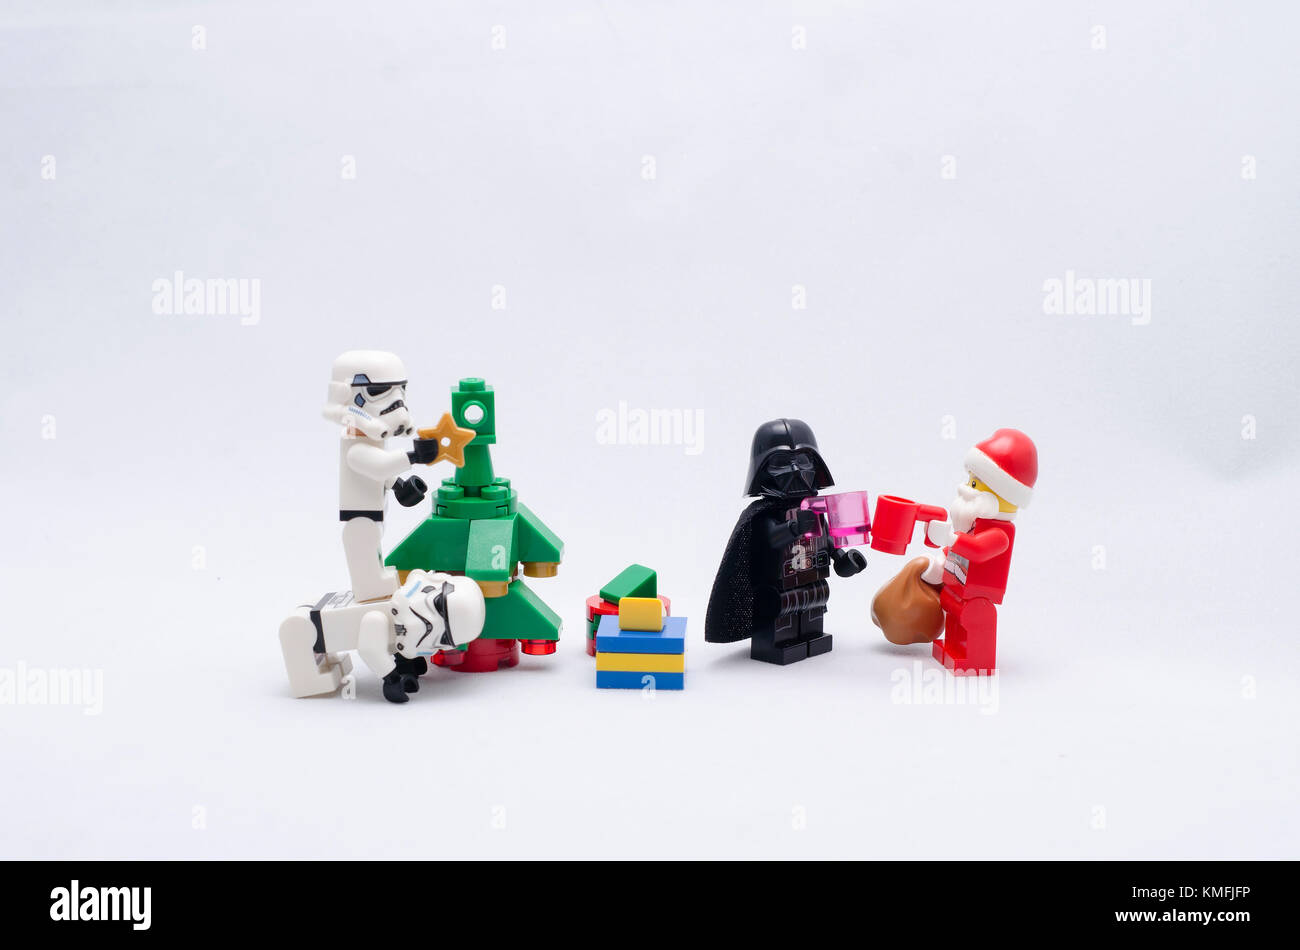 Santa Claus und Darth Vader trinken. Storm troopers Weihnachtsbaum dekorieren. Lego Minifiguren sind von der Lego hergestellt. Stockfoto